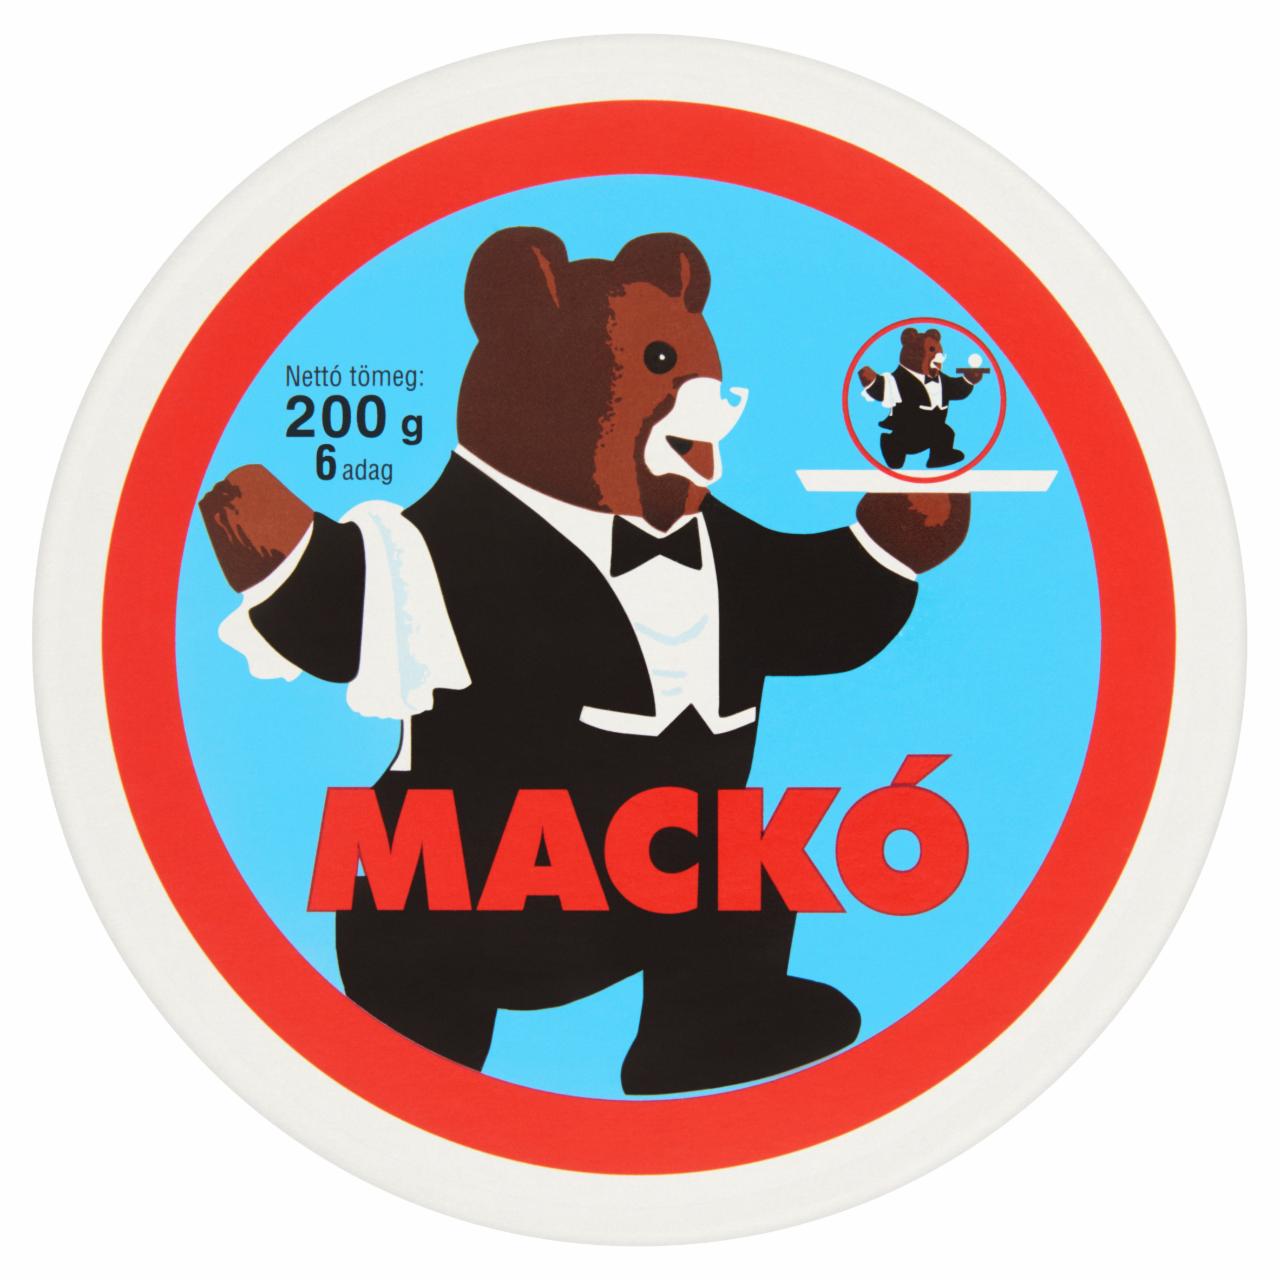 Képek - Mackó kenhető, félzsíros ömlesztett sajt 6 db 200 g